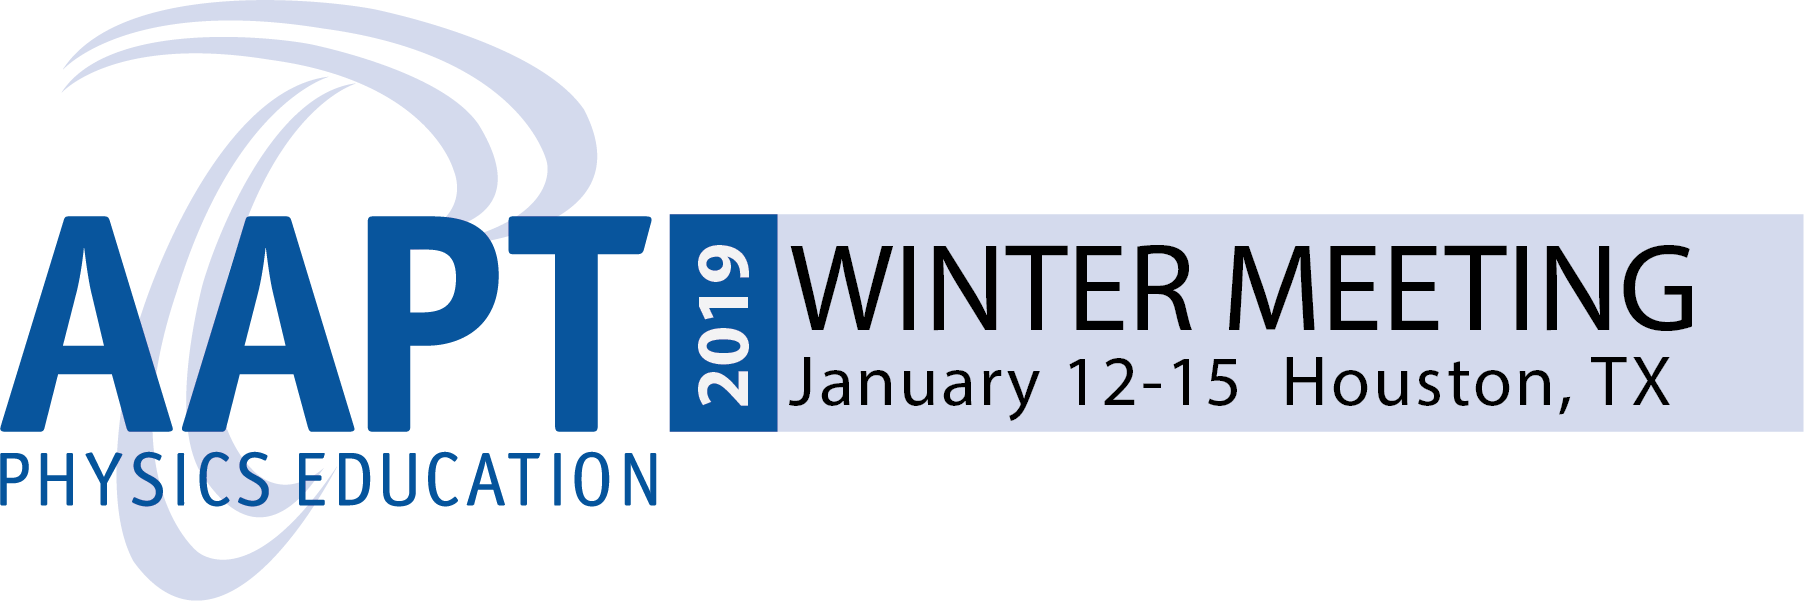 AAPT Winter Meeting 2019 in Houston, TX